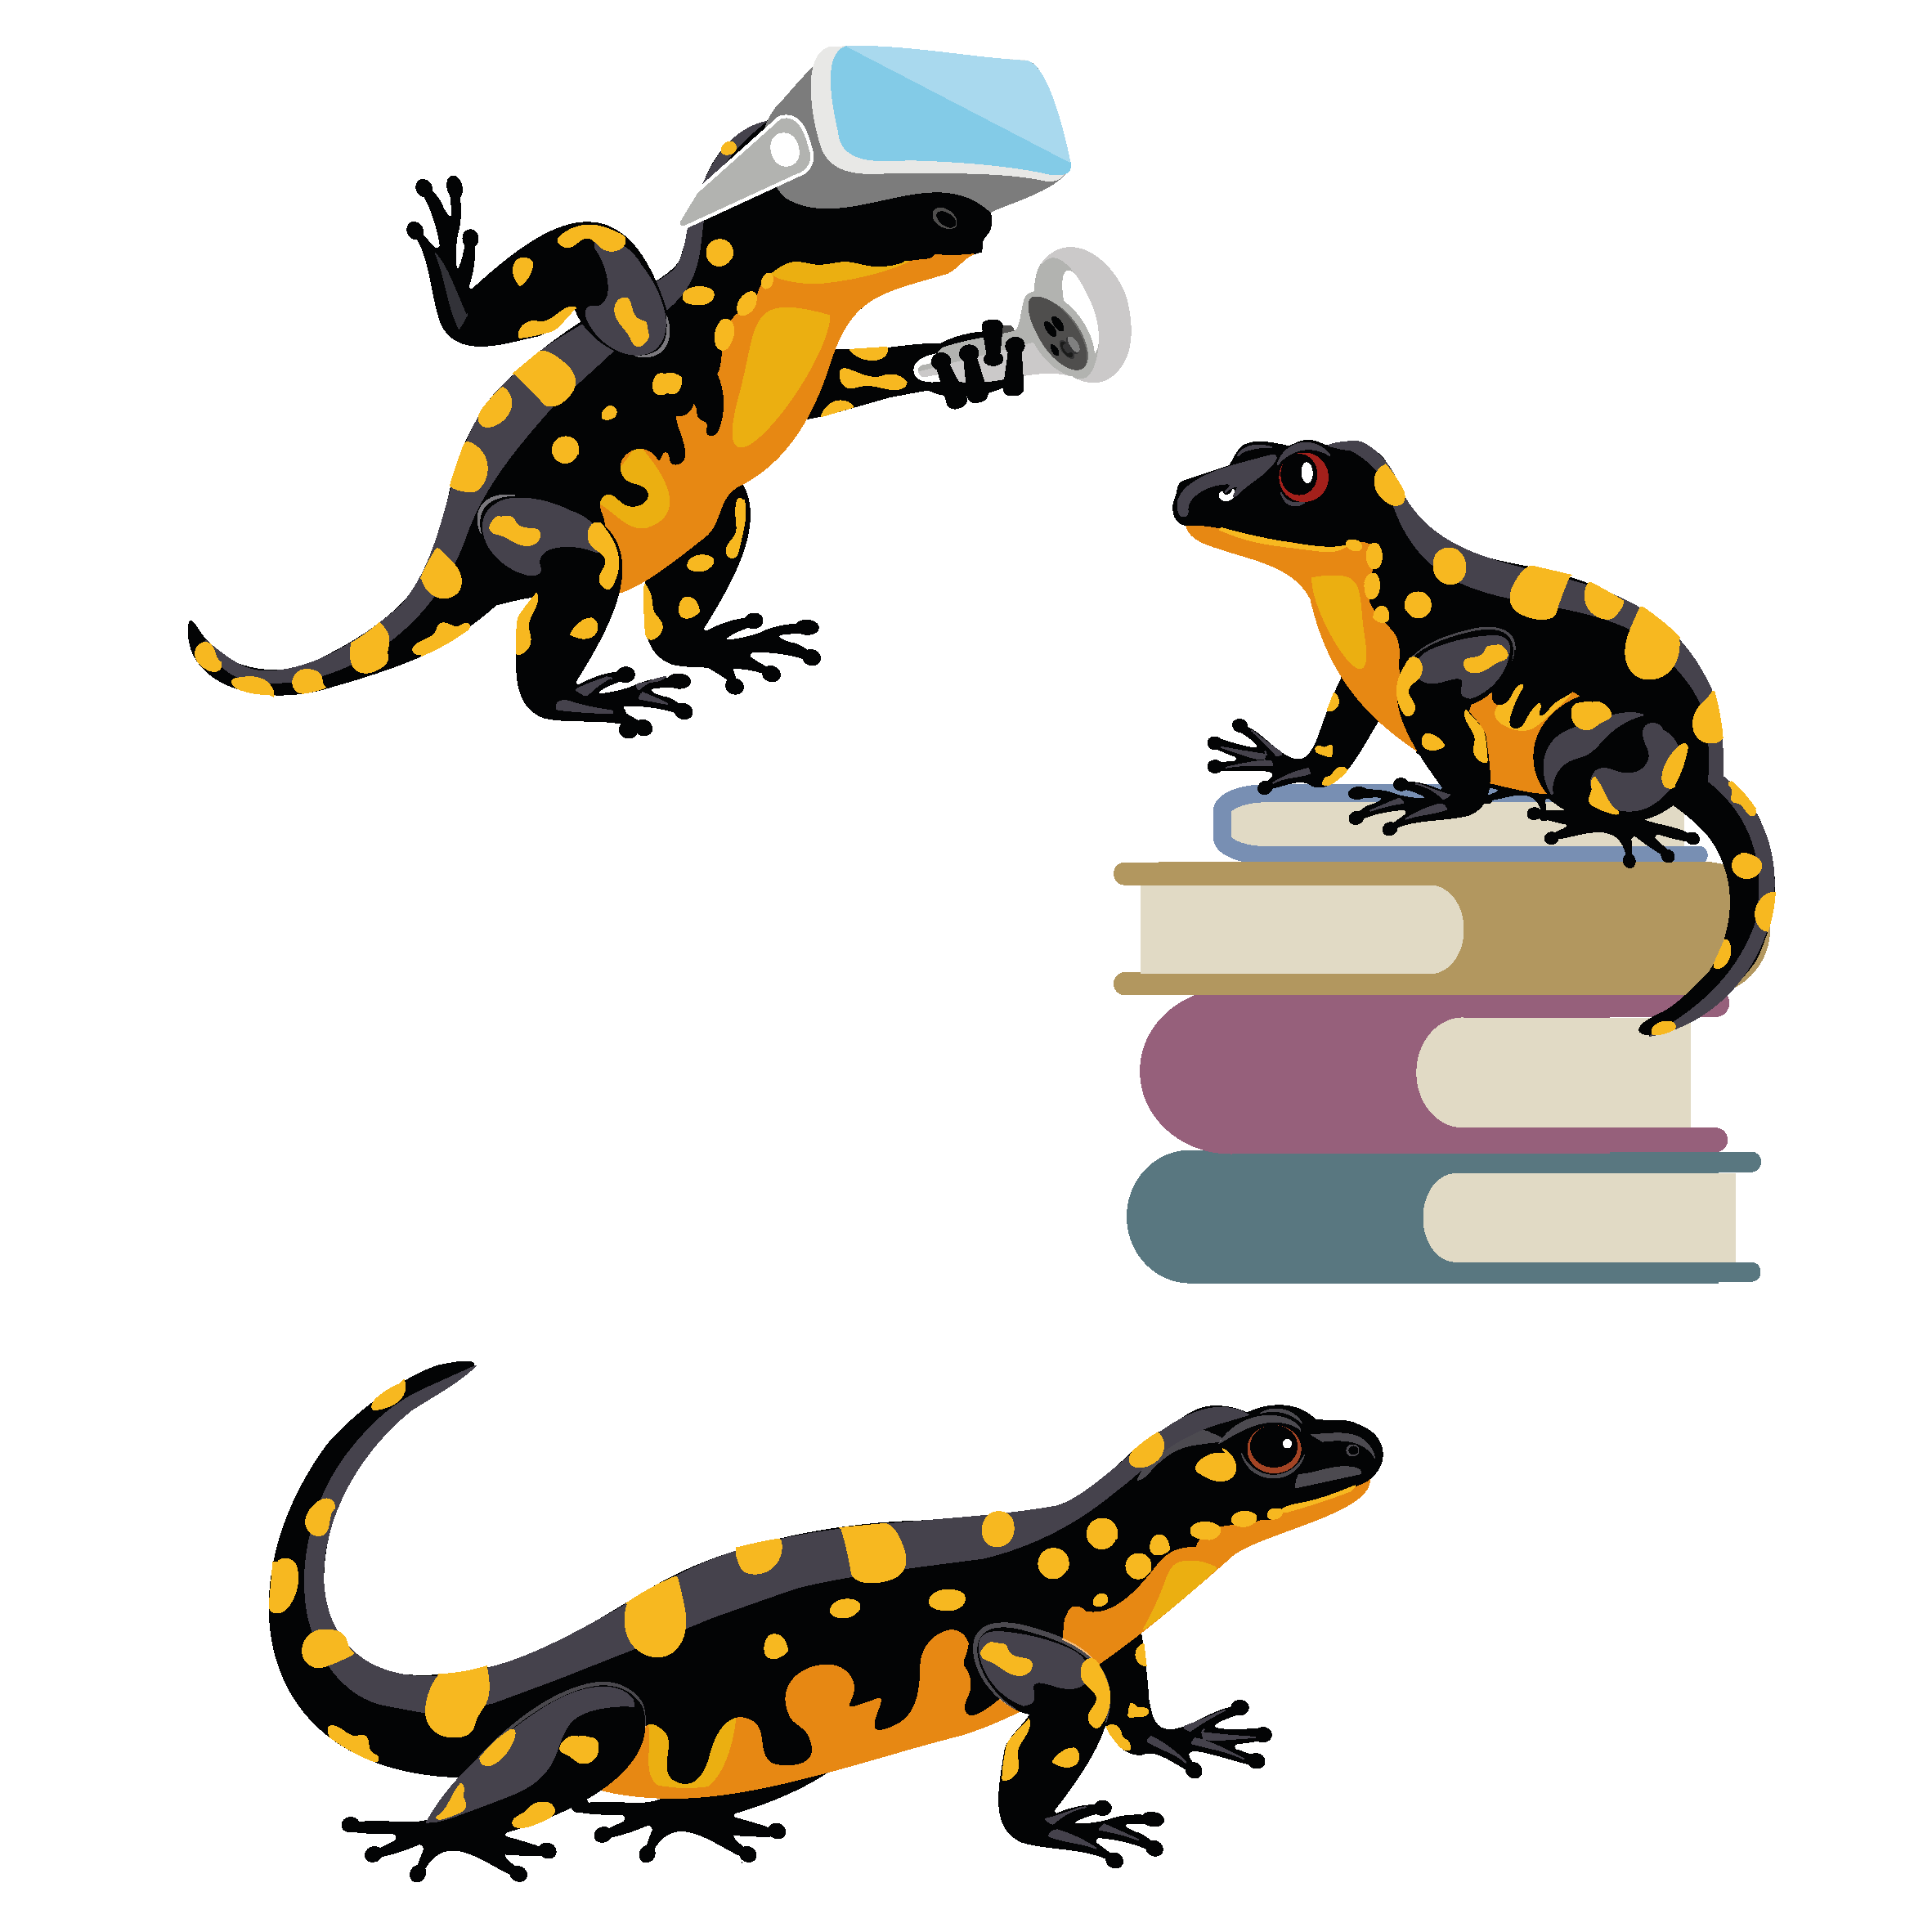 Lernmedien Illustration | Weiterbildung, Tiercharakter: Der heimische Salamander, mal auf einem Bücherstapel, mal mit Virtual Reality-Brille.